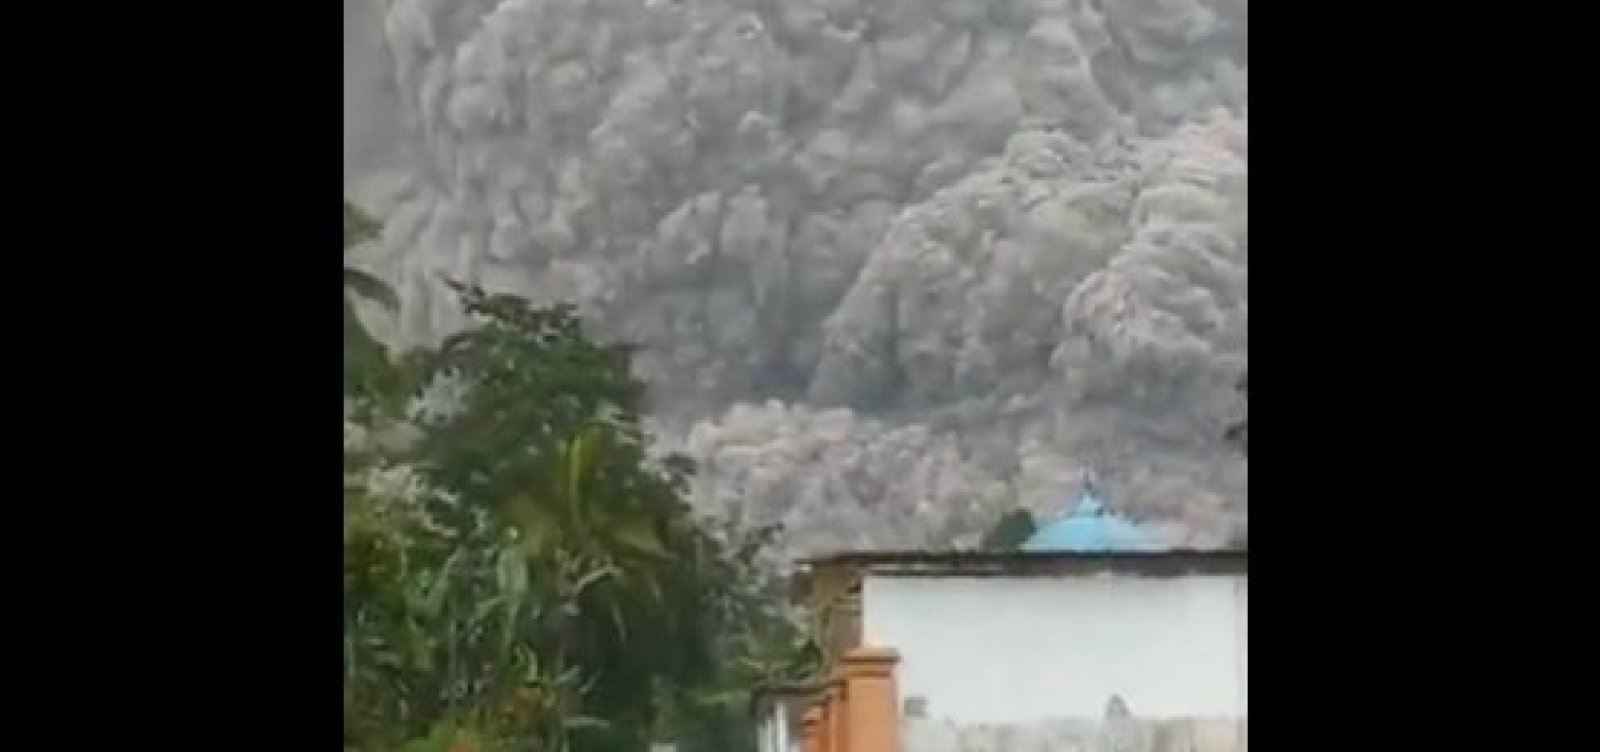 Moradores fogem após vulcão entrar em erupção na Indonésia; uma pessoa morreu